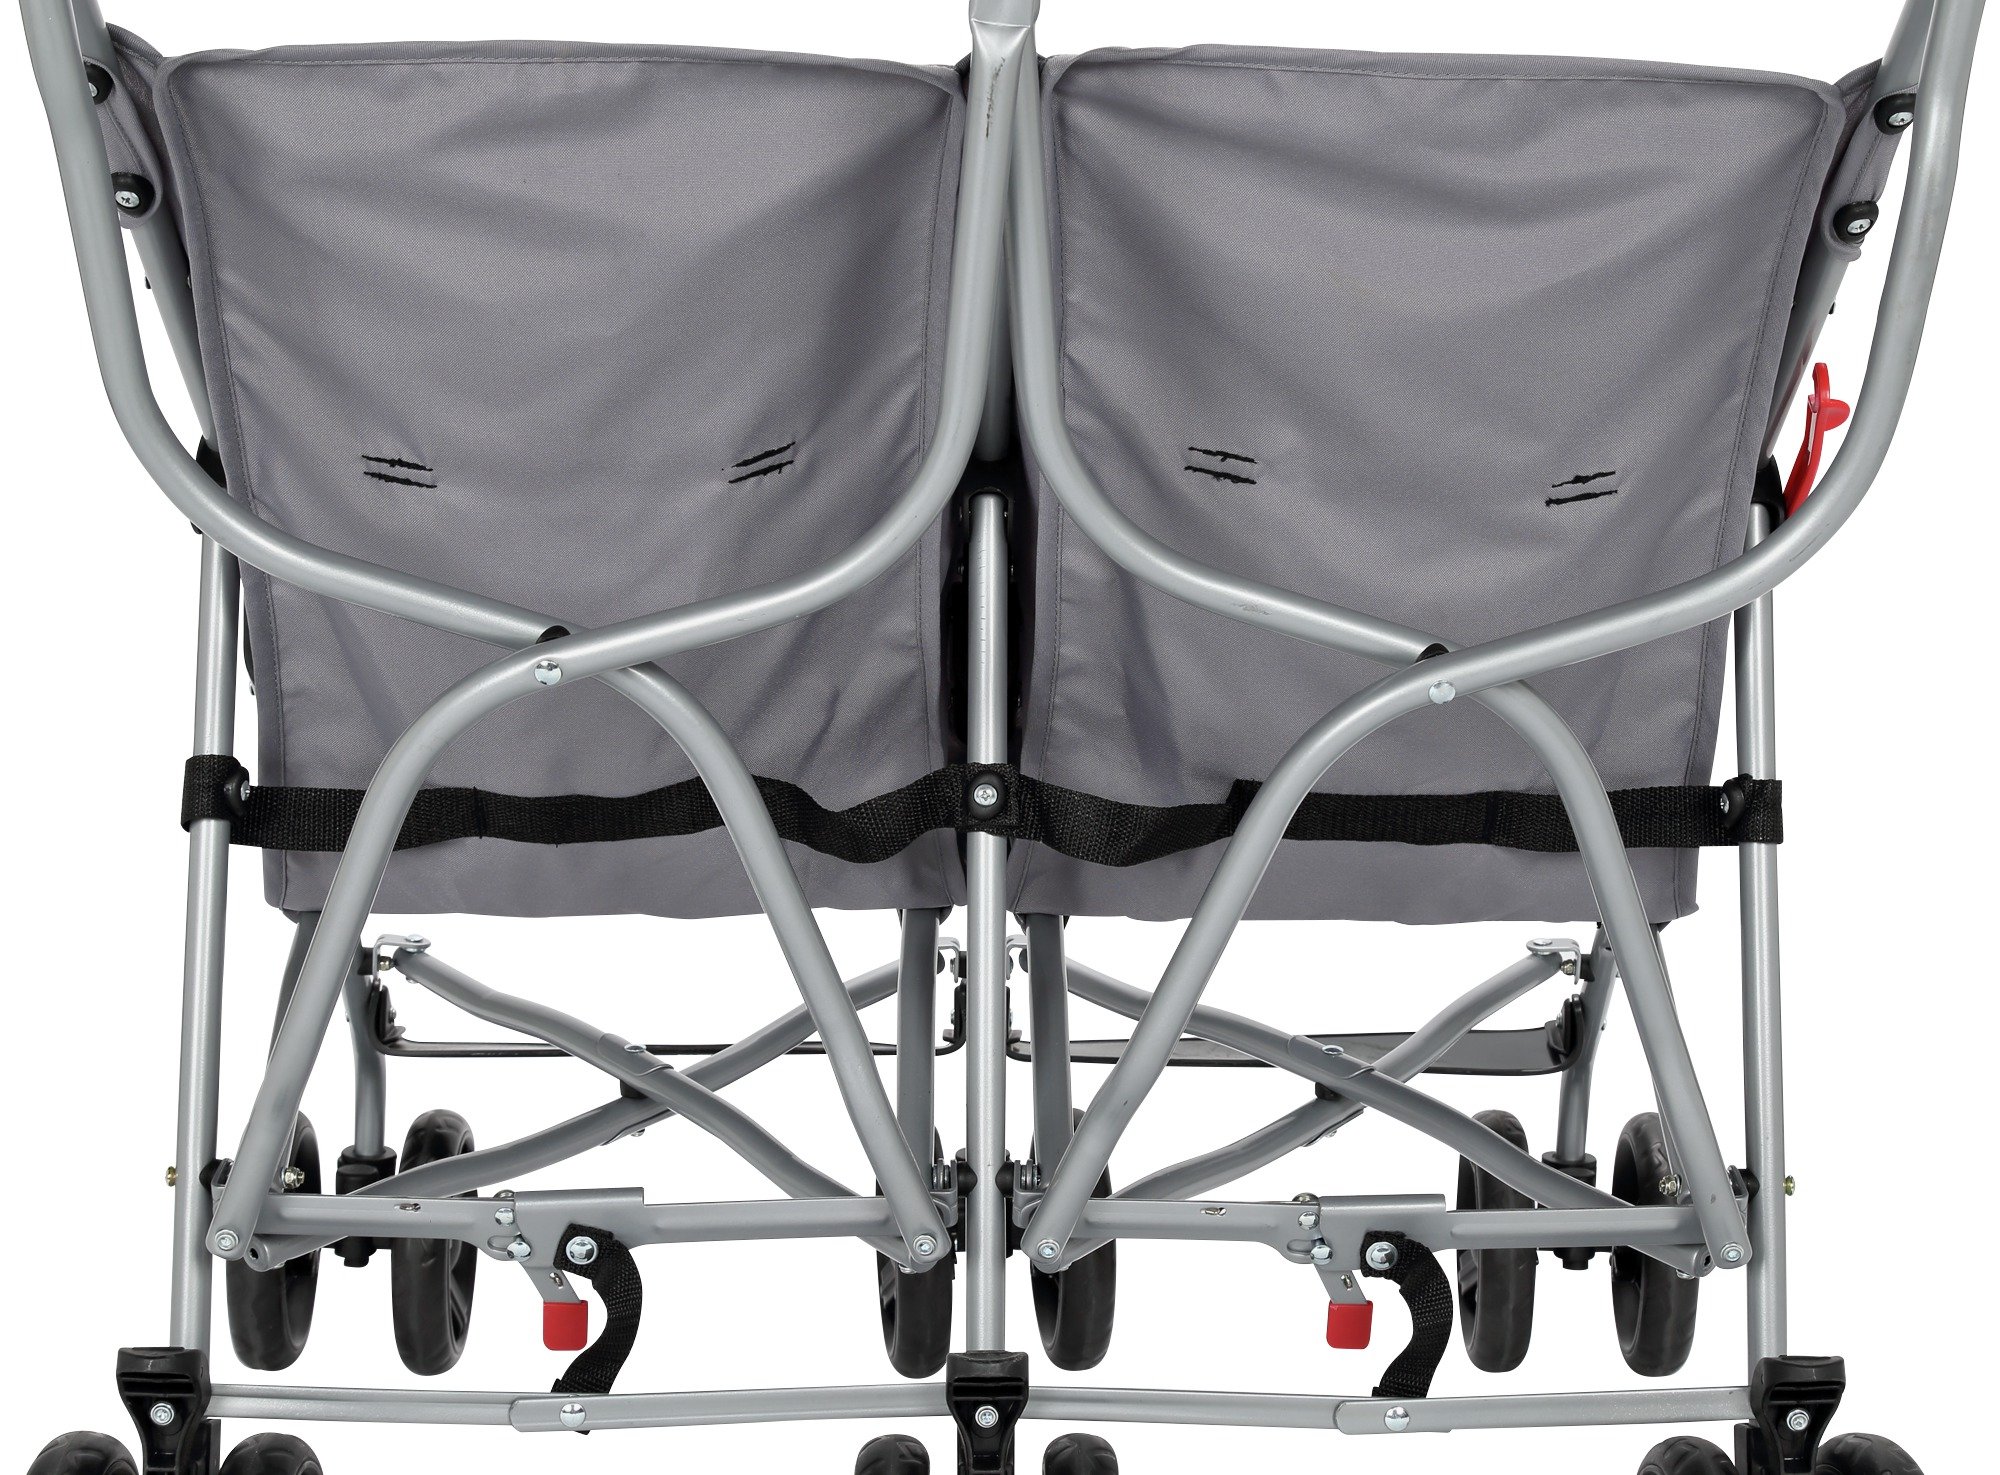 cuggl twin stroller